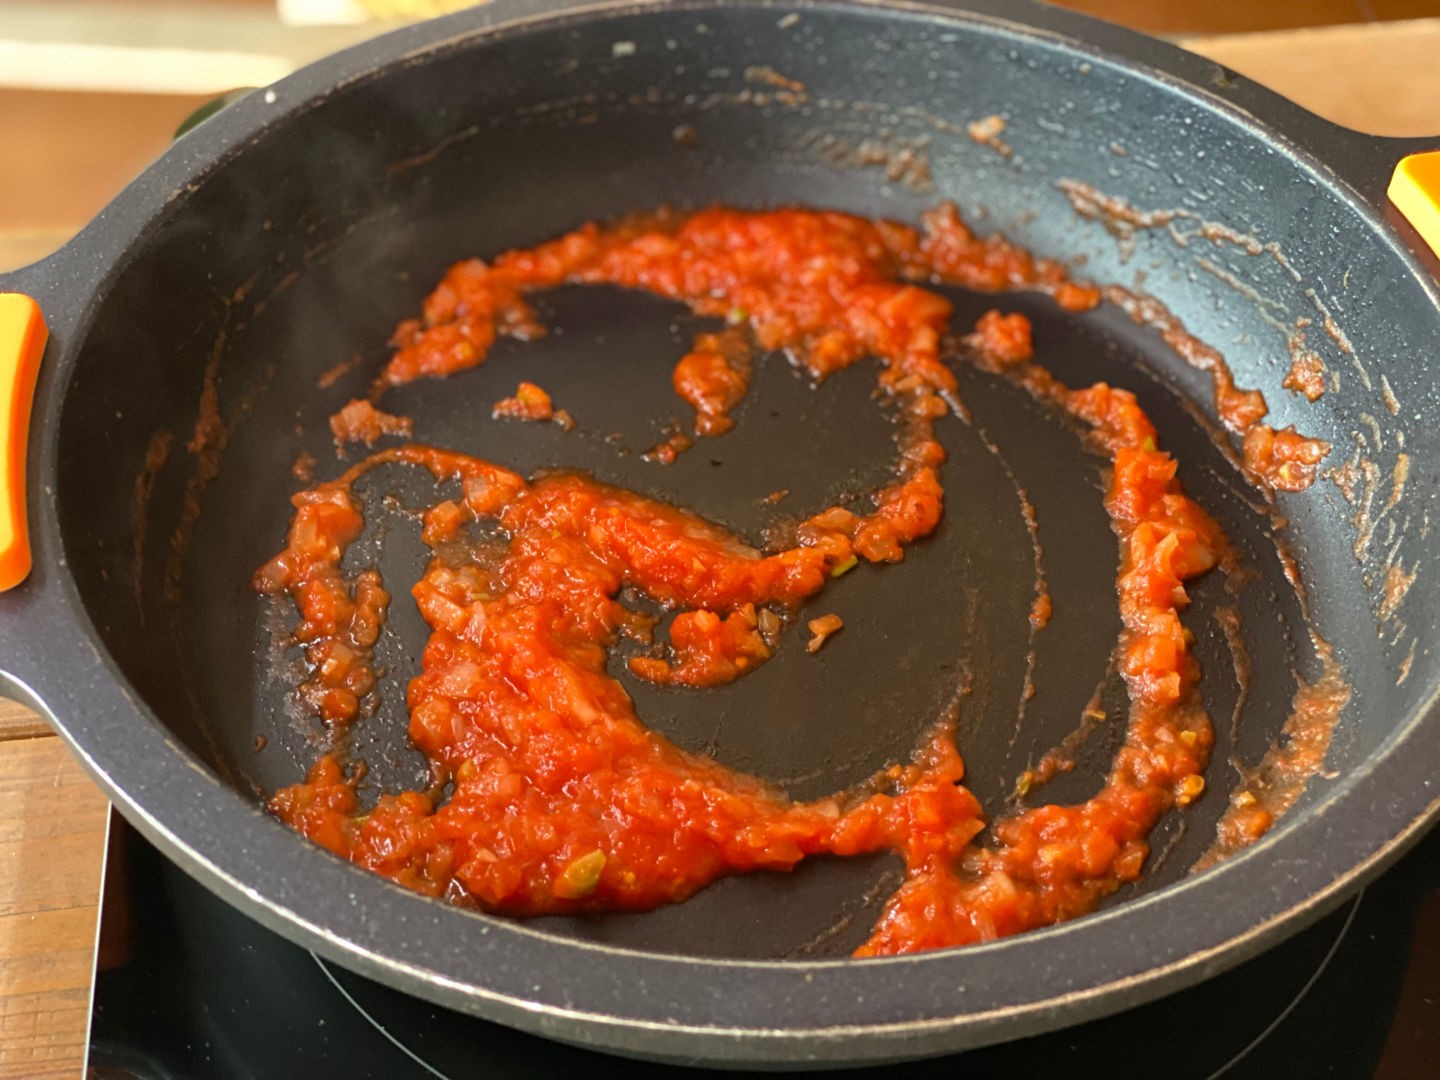 Cortamos la cebolla y rallamos el tomate.